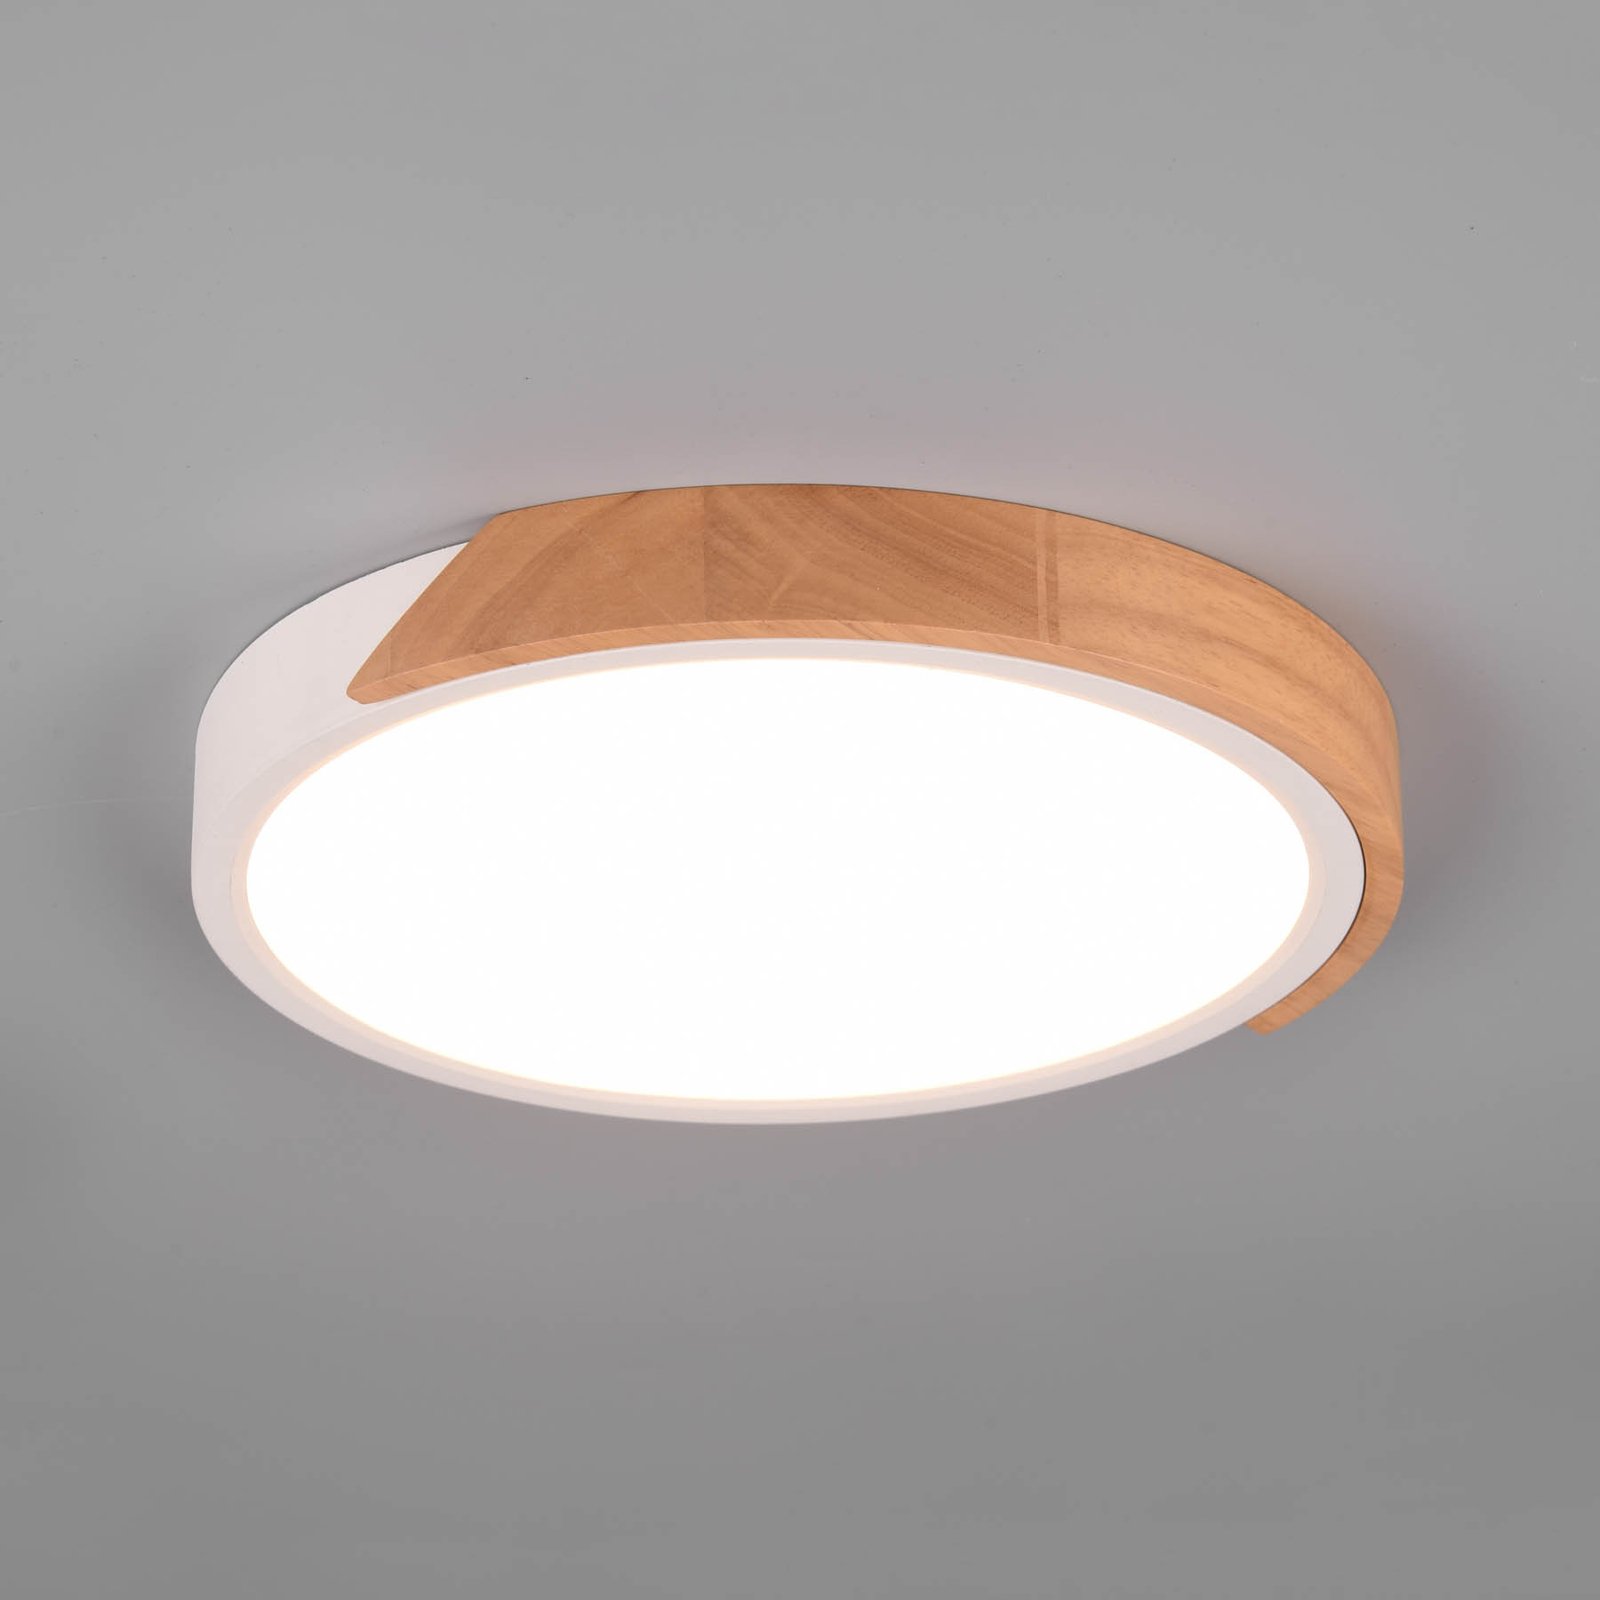 LED stropní světlo Jano, Ø 31,5 cm, 3 000K, bílá